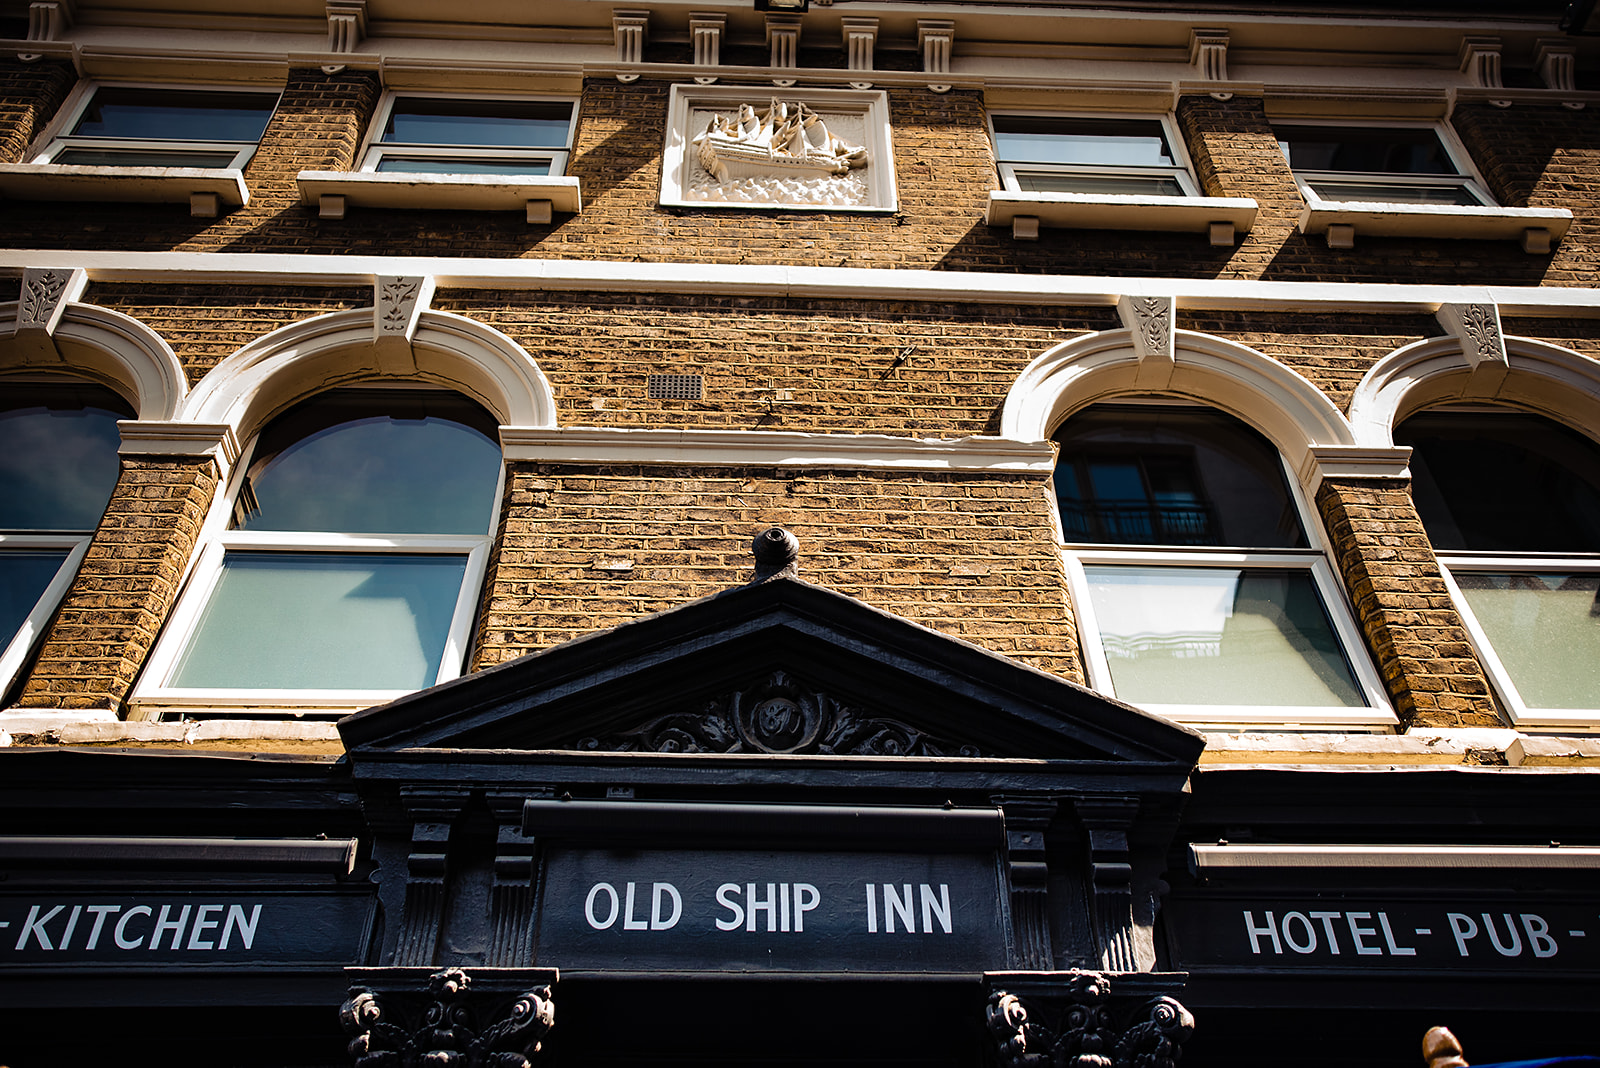 A photo of Old Ship Inn pub